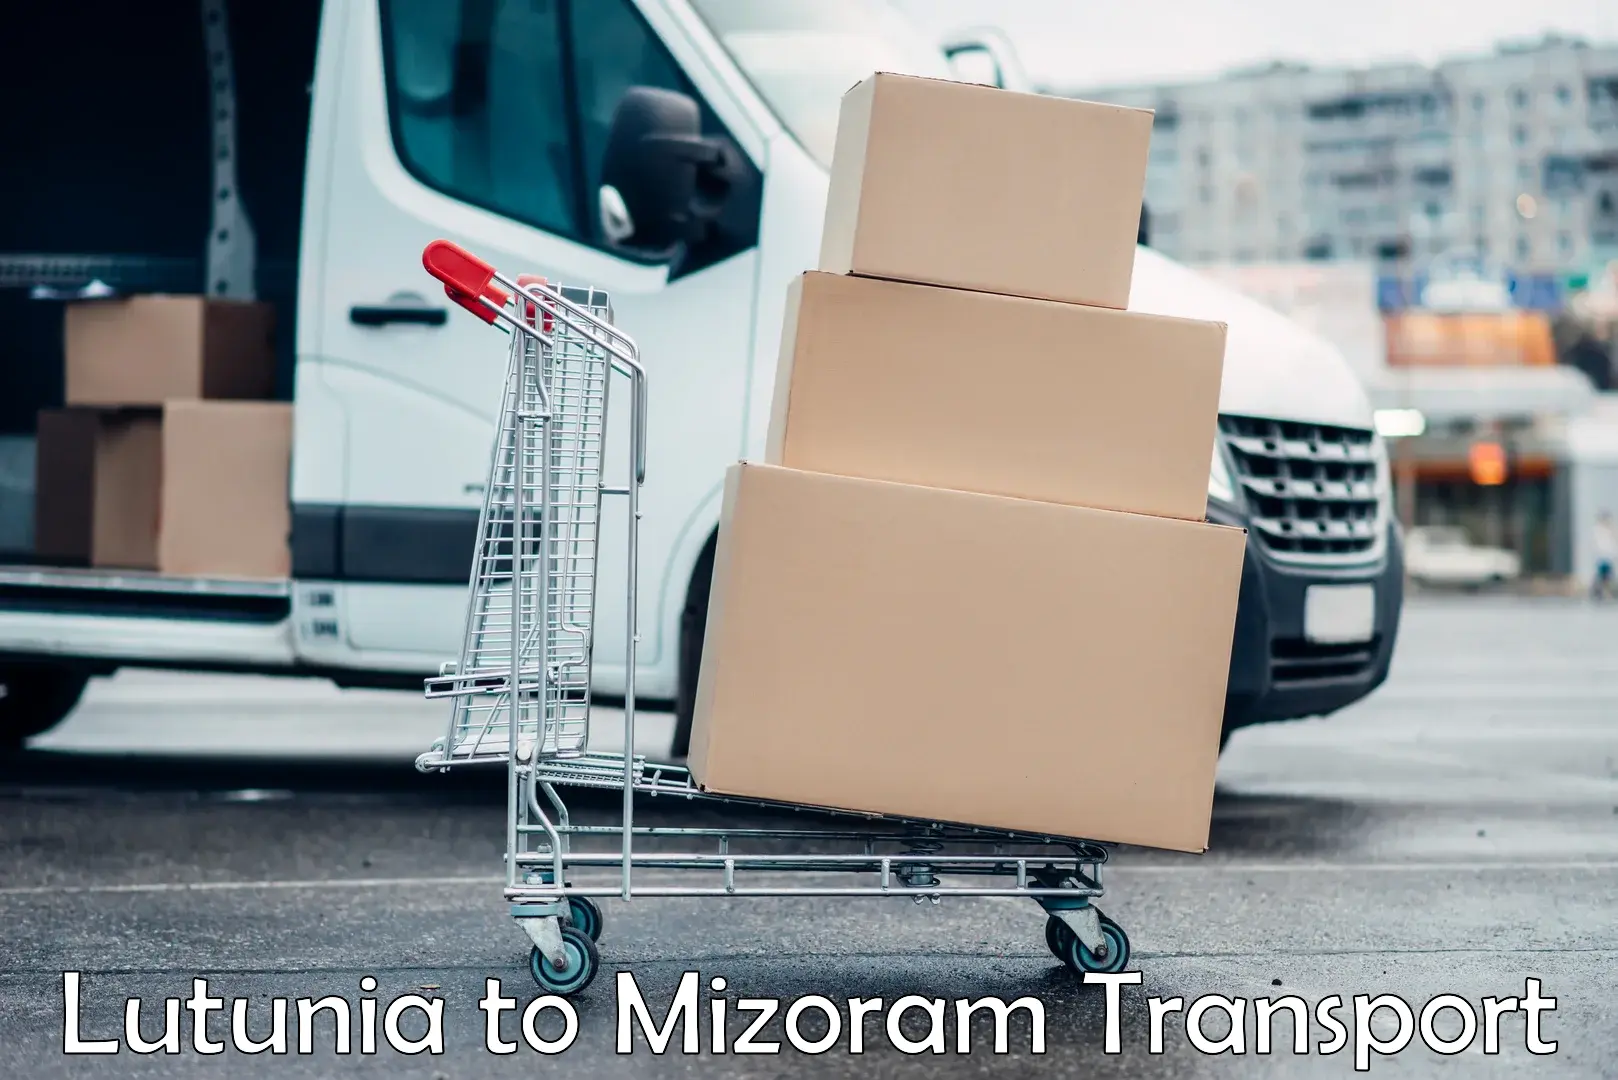 Lorry transport service Lutunia to Mizoram